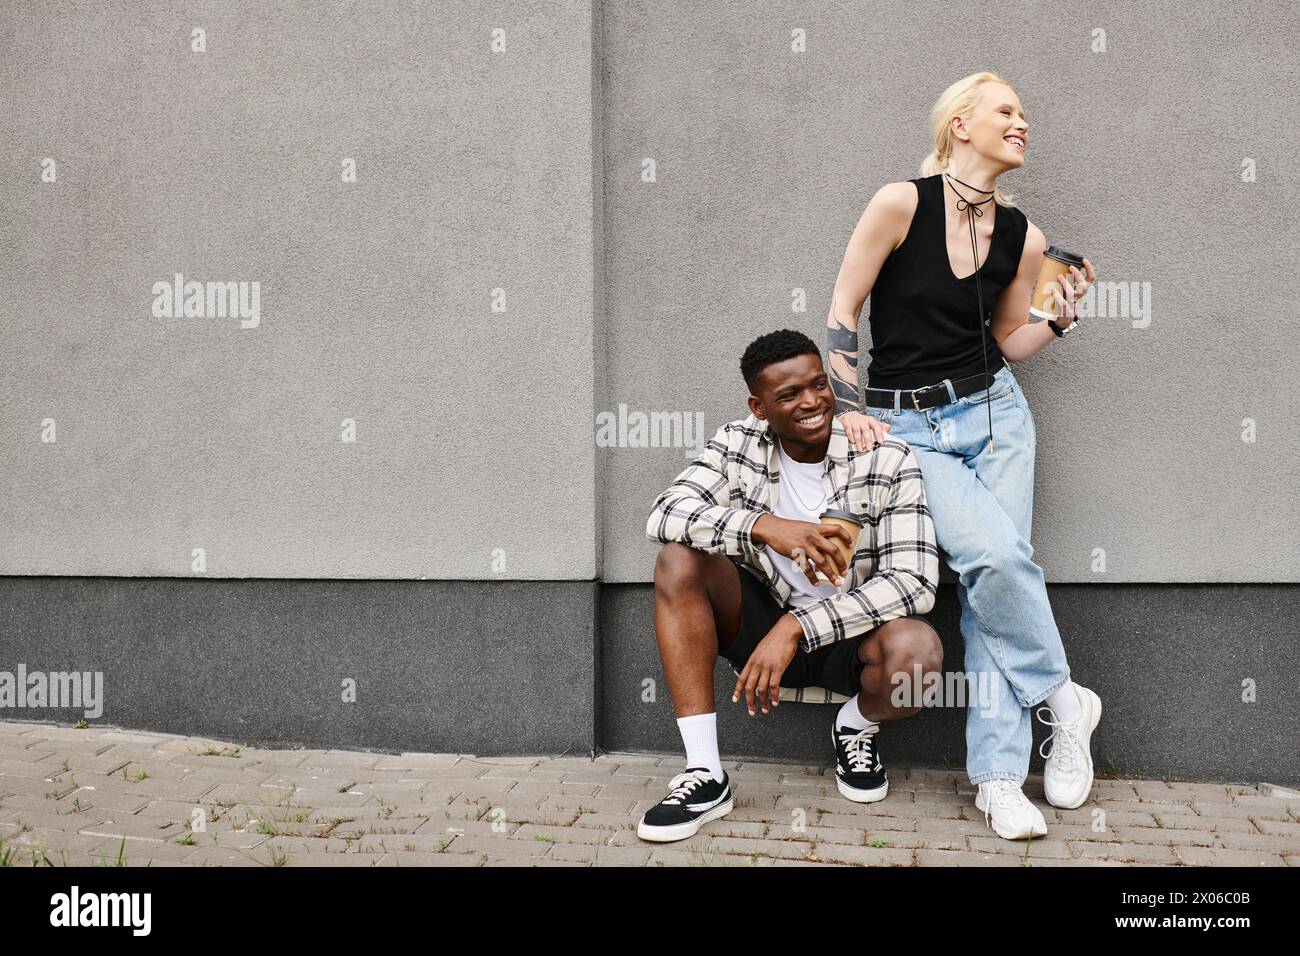 Ein multikulturelles Paar sitzt friedlich nebeneinander auf dem städtischen Bürgersteig und teilt einen zarten Moment der Zweisamkeit. Stockfoto